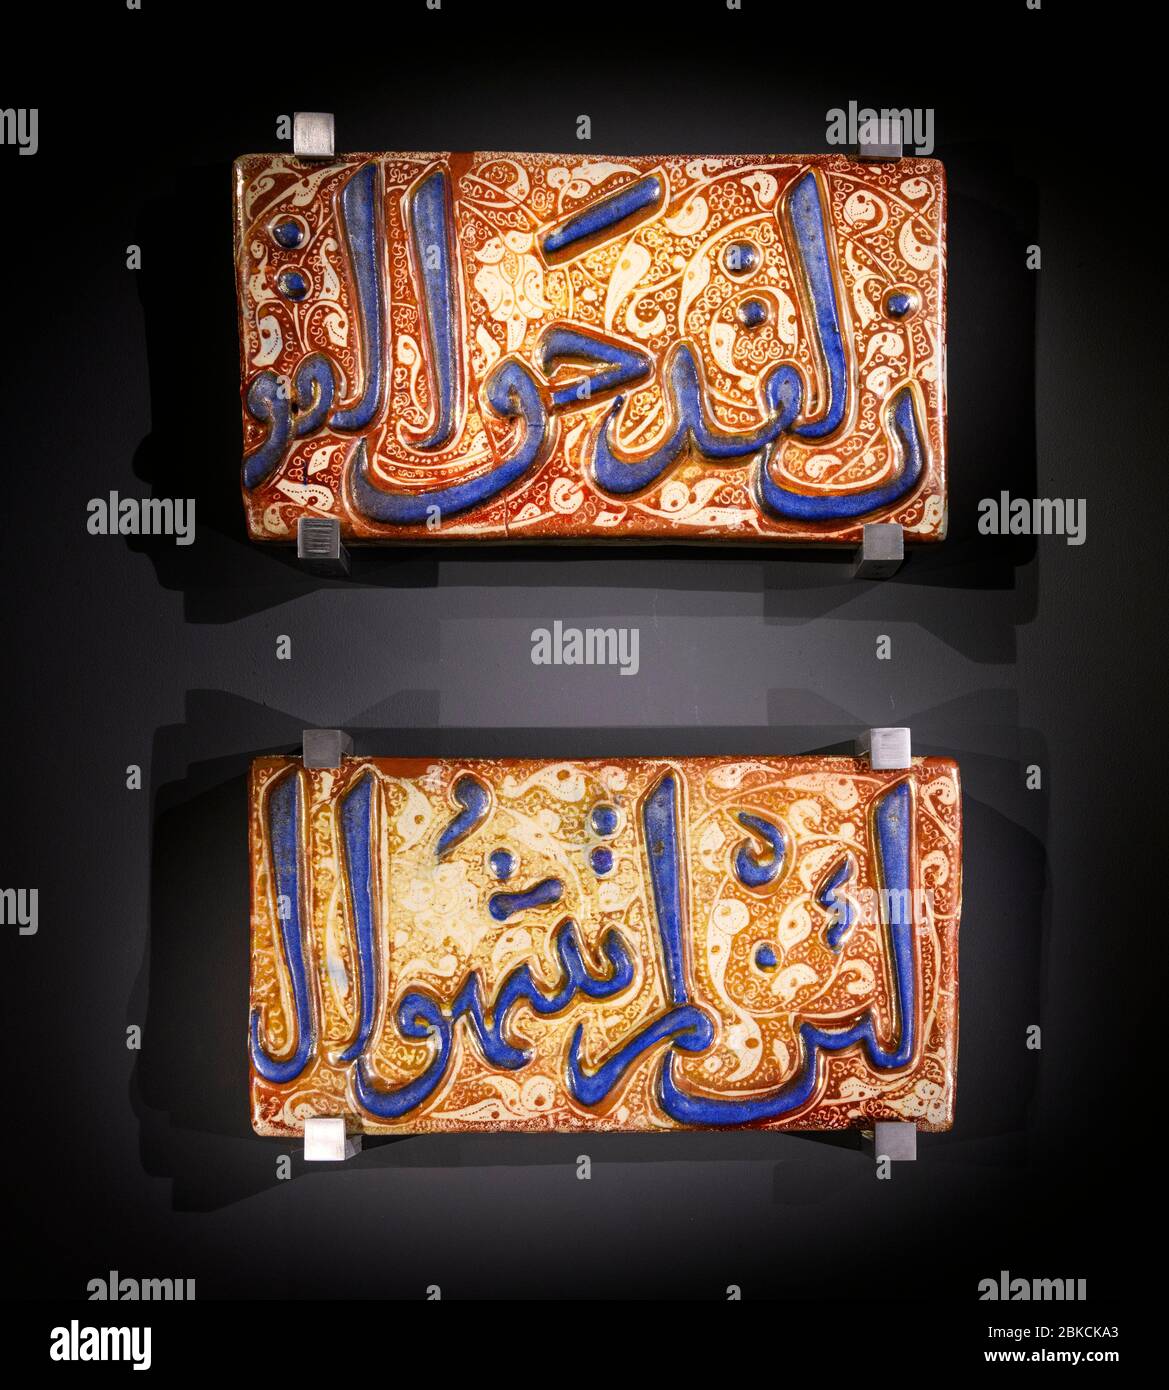 Carreaux de Fritware avec inscription dans le script de thuluth, surglacer lustré-peint, fin du XIIIe siècle/début du XIVe siècle, Iran Banque D'Images